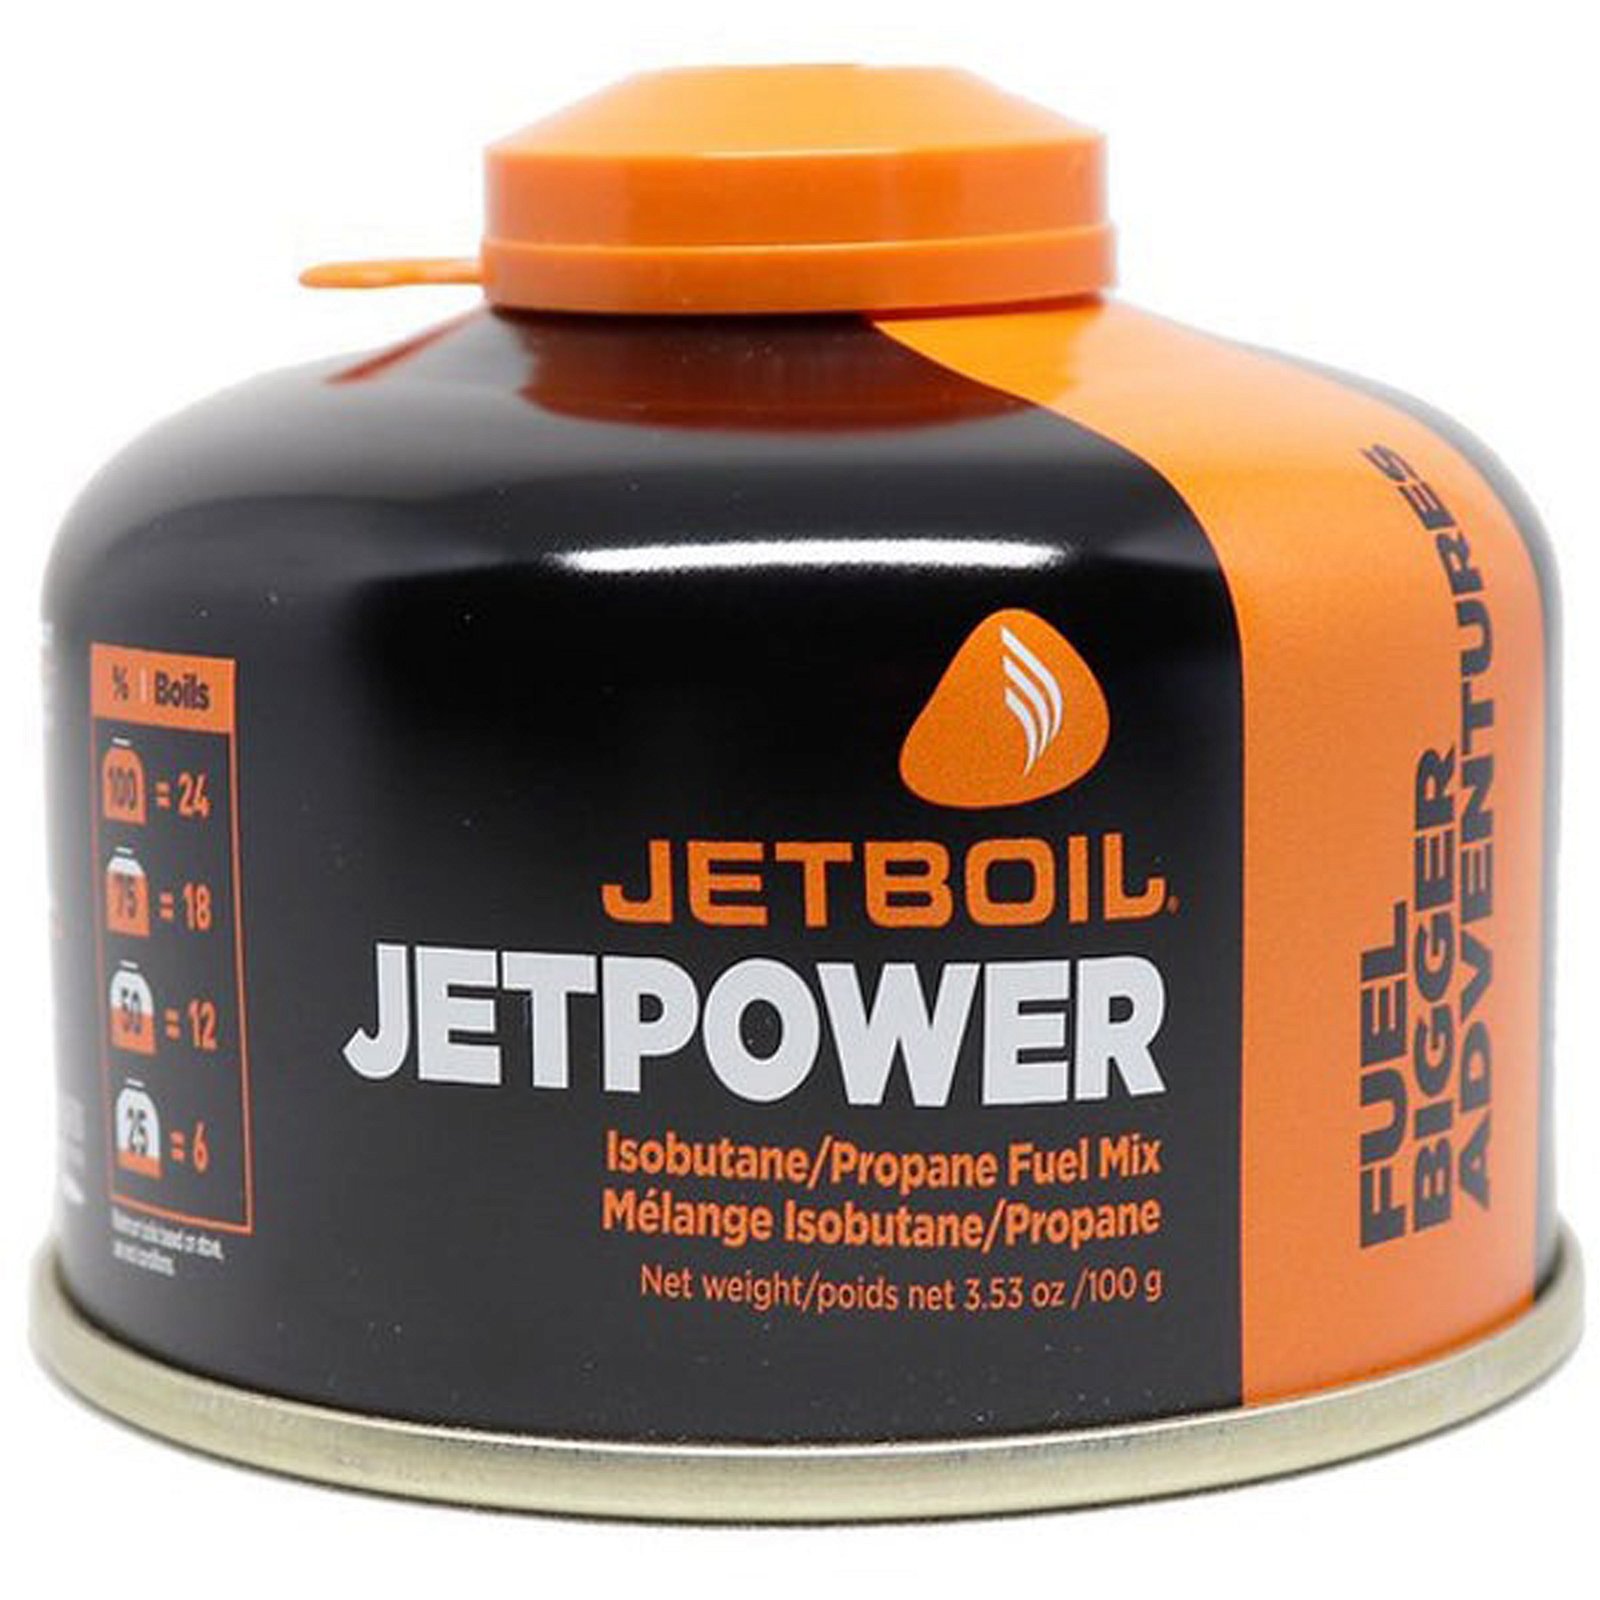 Bilde av Jetboil Jetpower Gass 100ghøy Effekt Og Lavt Forbruk